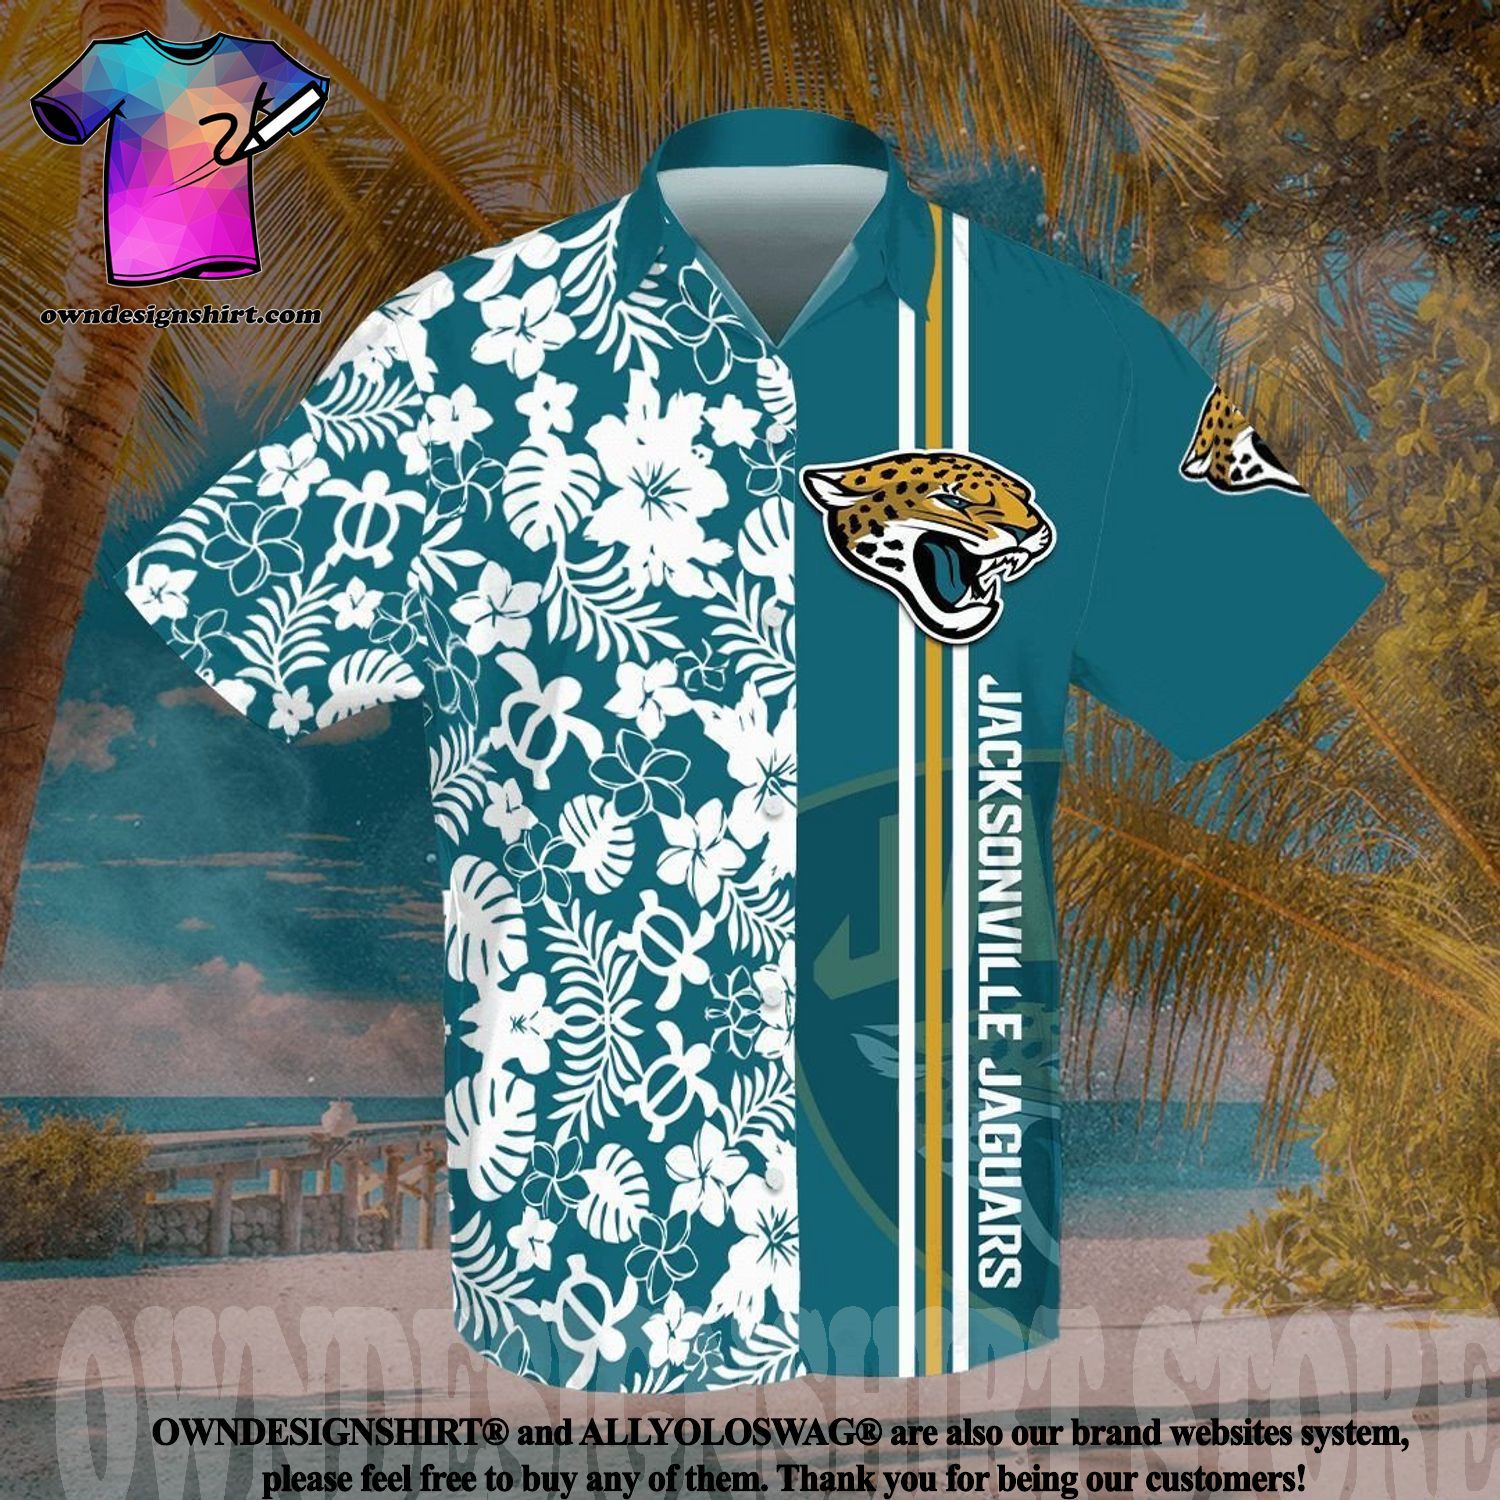 NFL Jacksonville Jaguars Fans Louis Vuitton Hawaiian Shirt For Men And Women